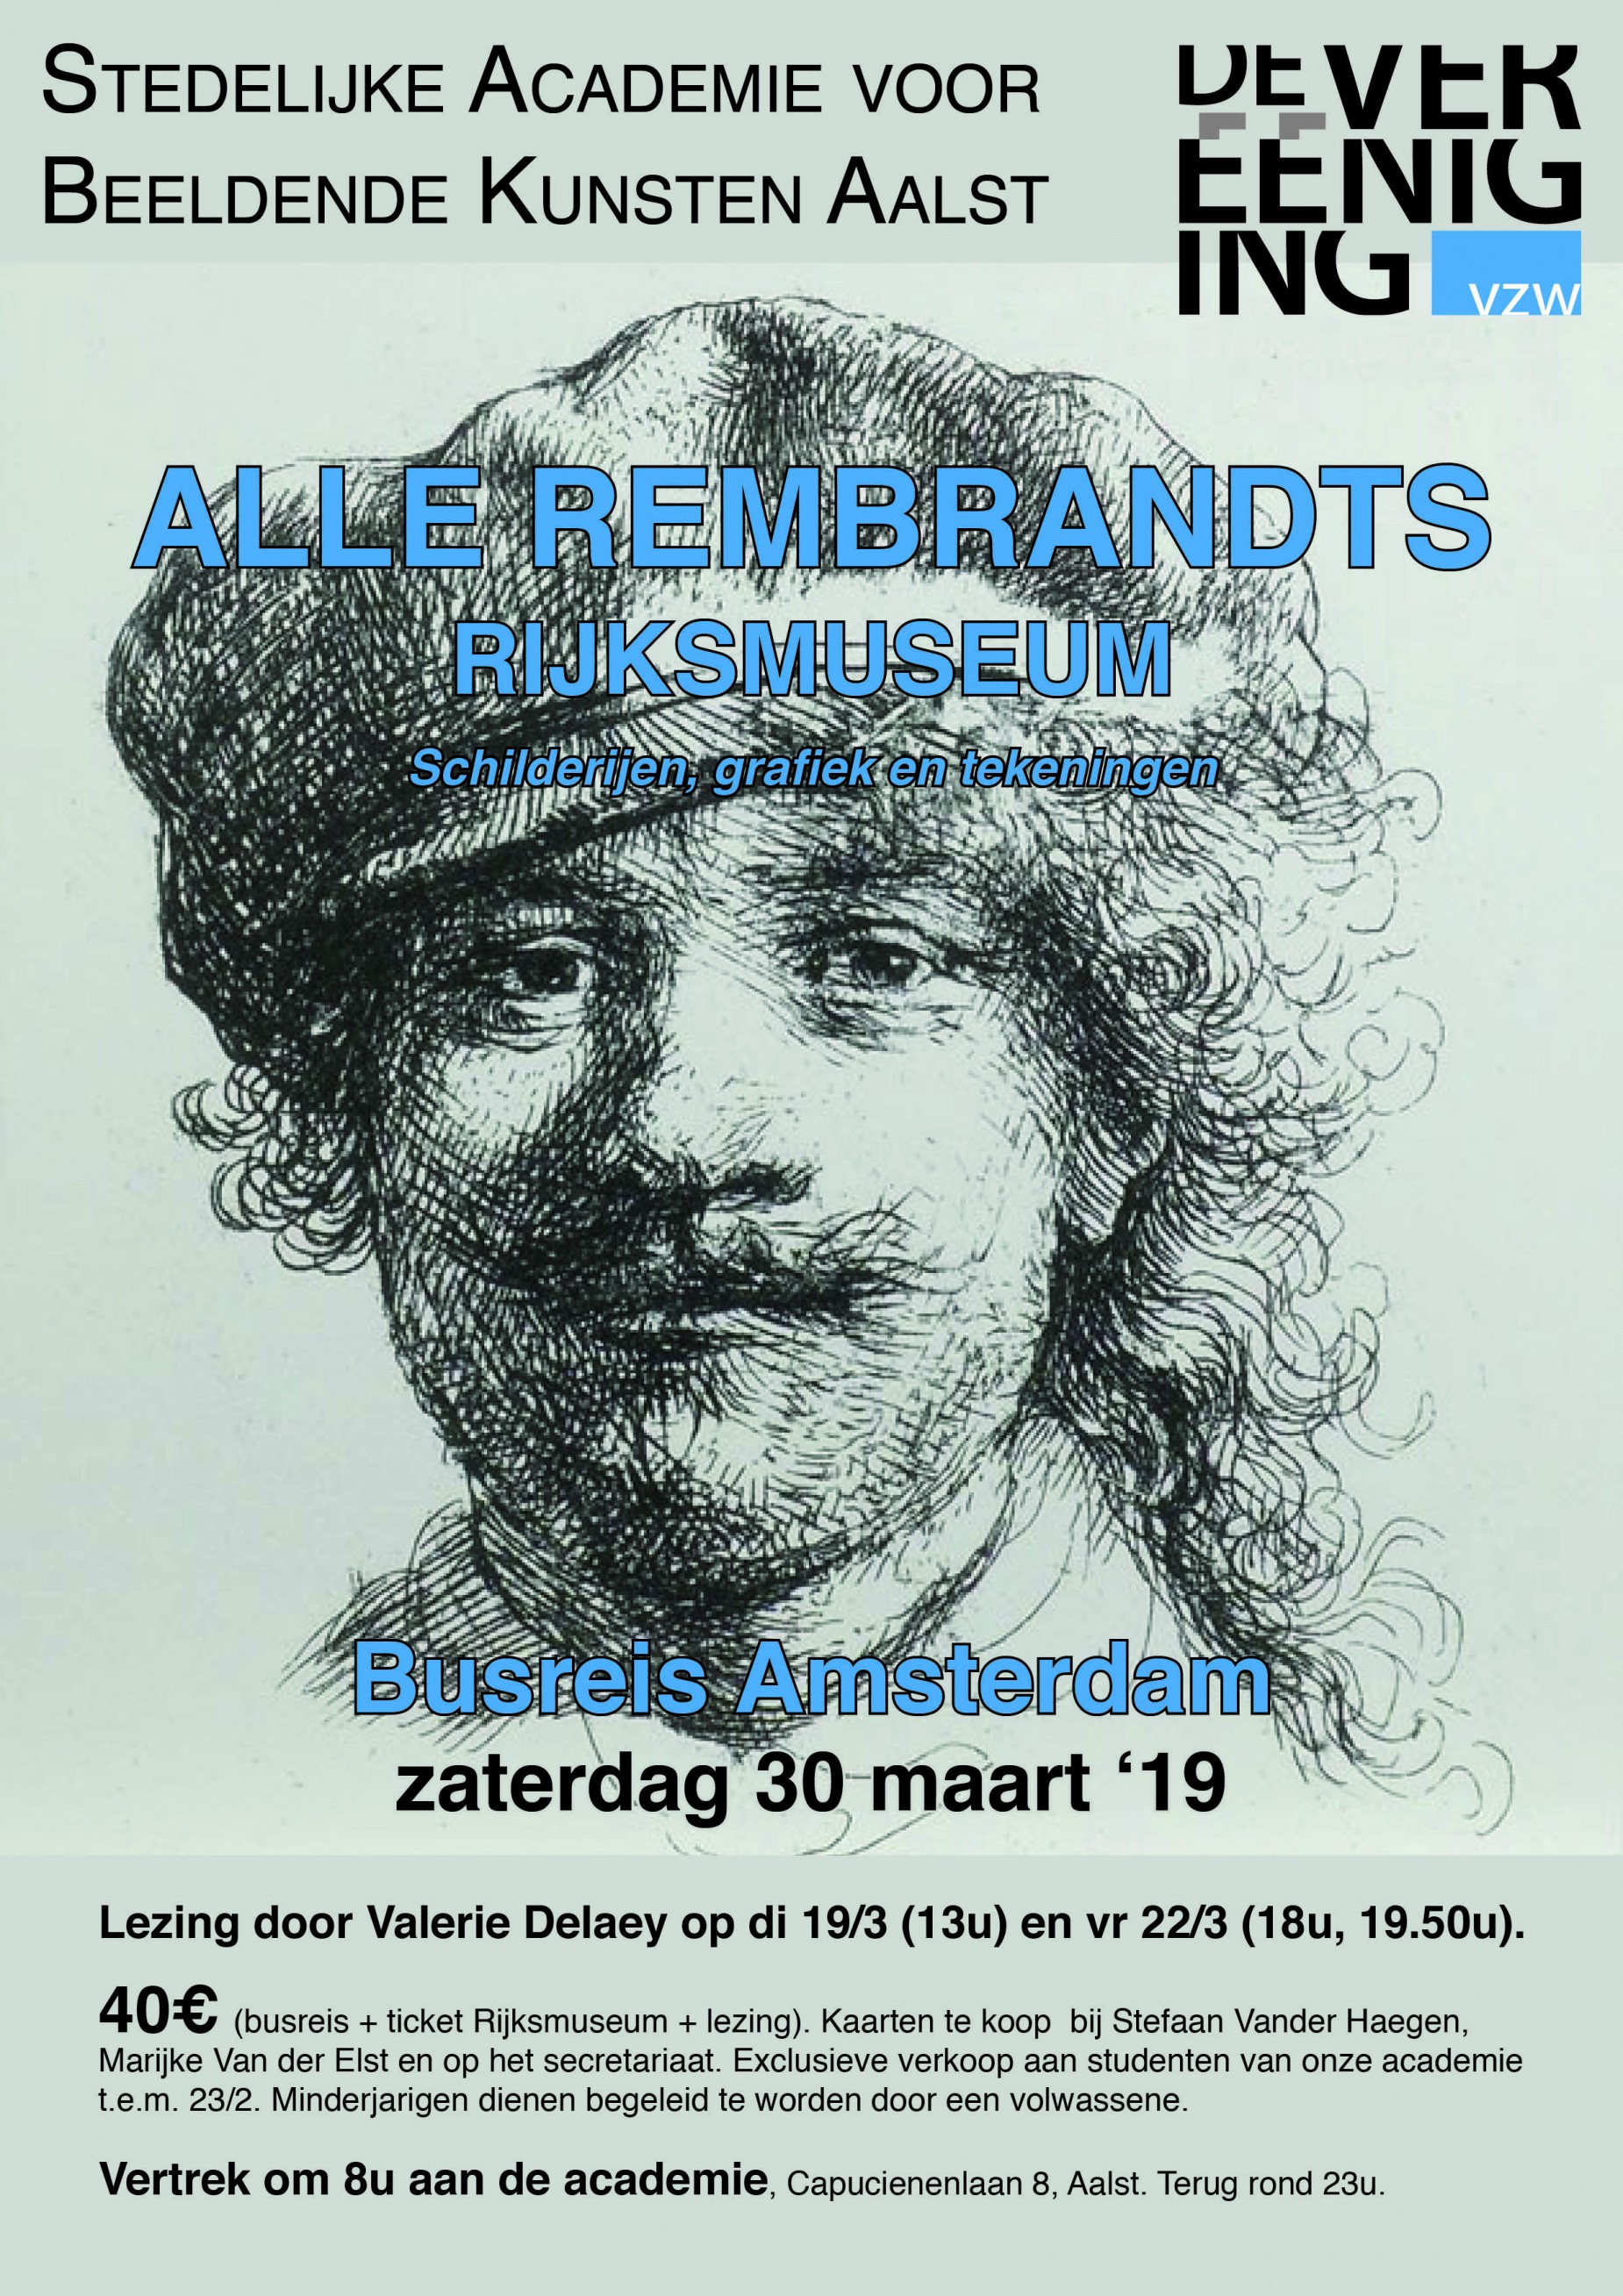 Busreis: tentoonstelling “Alle Rembrandts” op zaterdag 30 maart 2019.